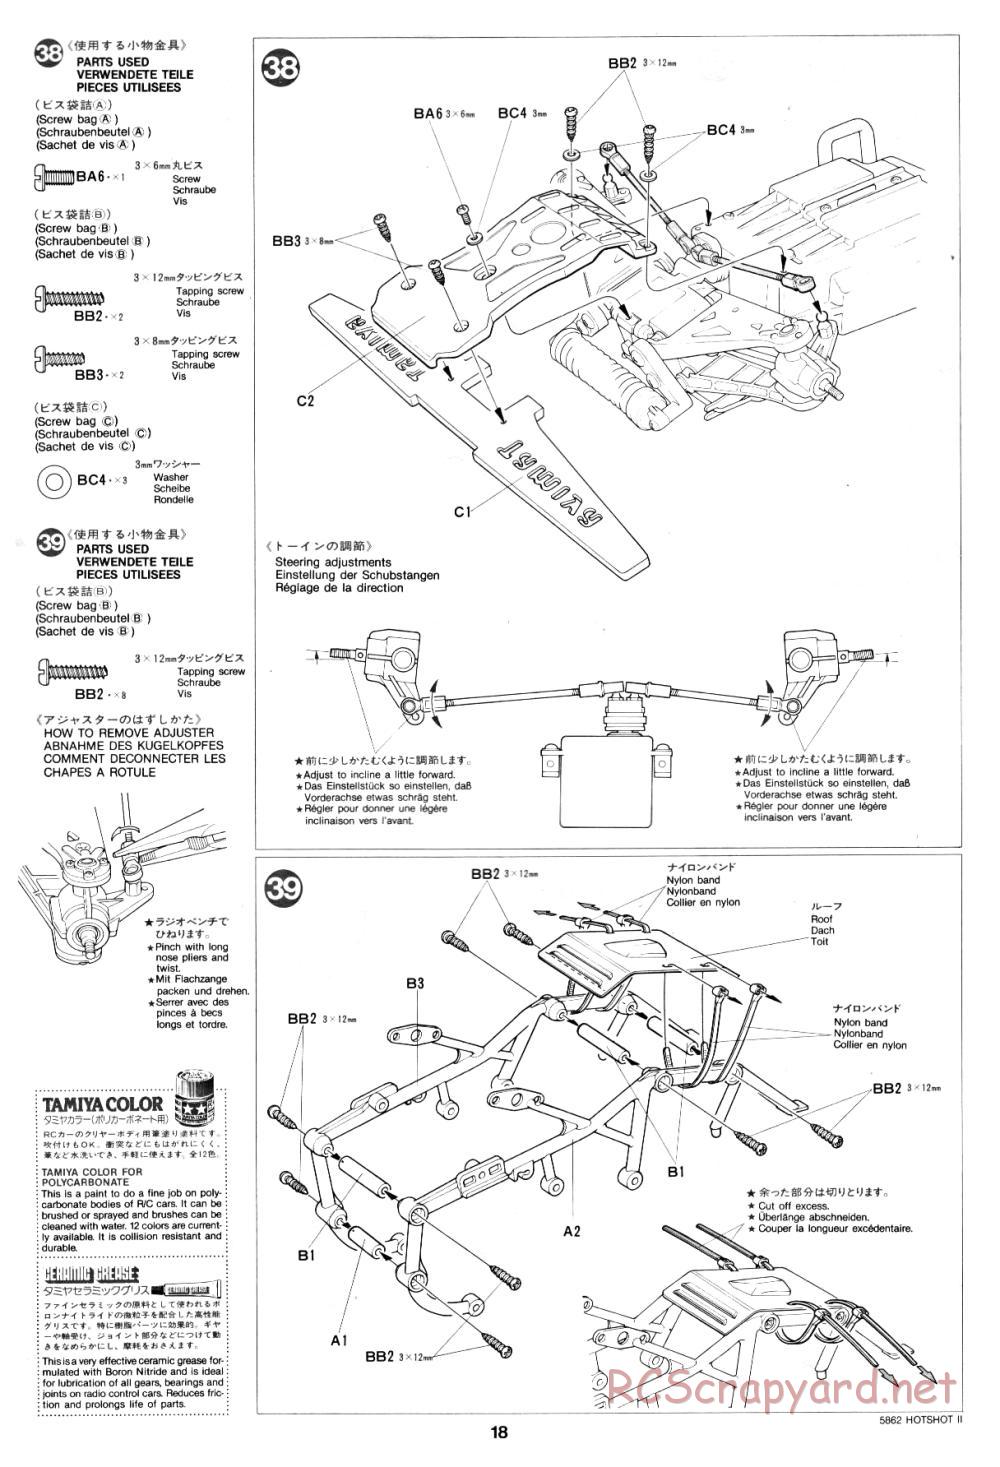 Tamiya - Hot-Shot II - 58062 - Manual - Page 18